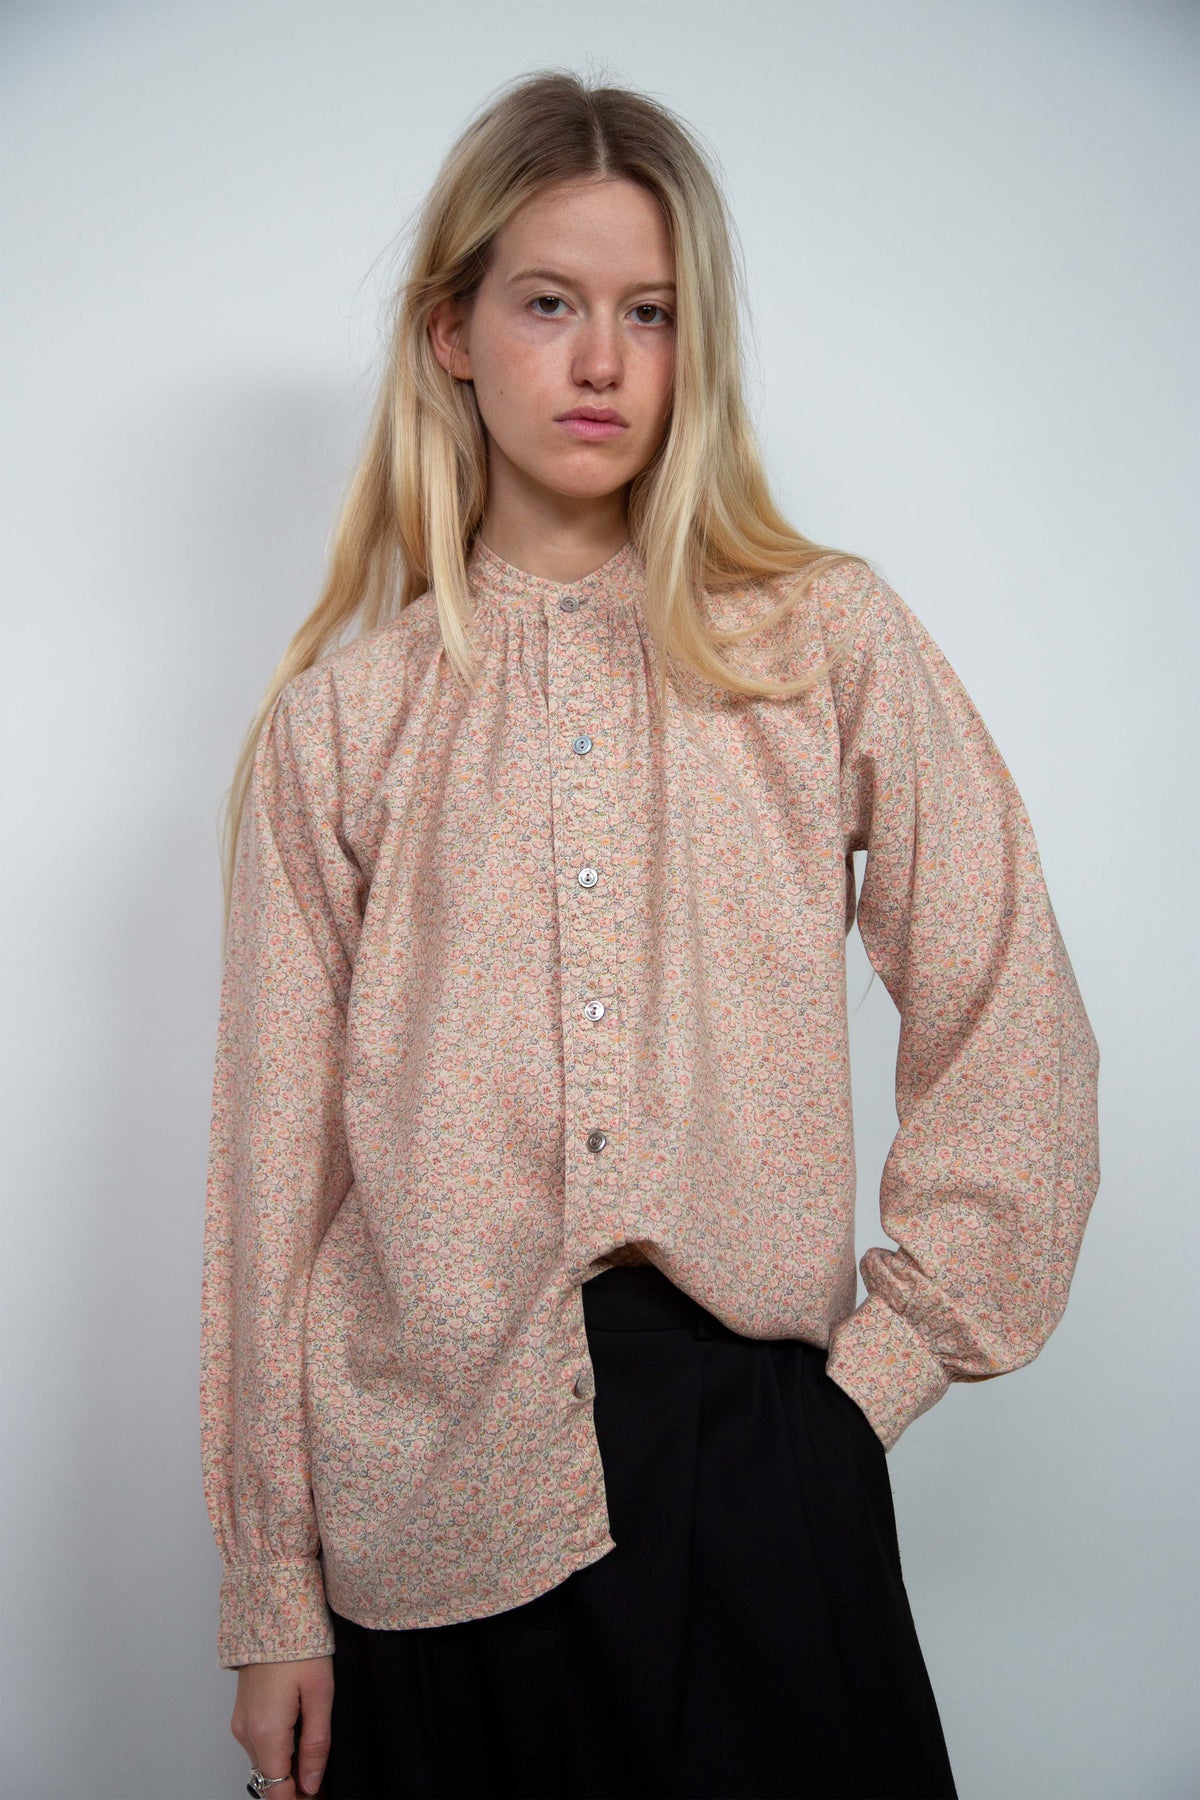 Yves Saint Laurent floral shirt